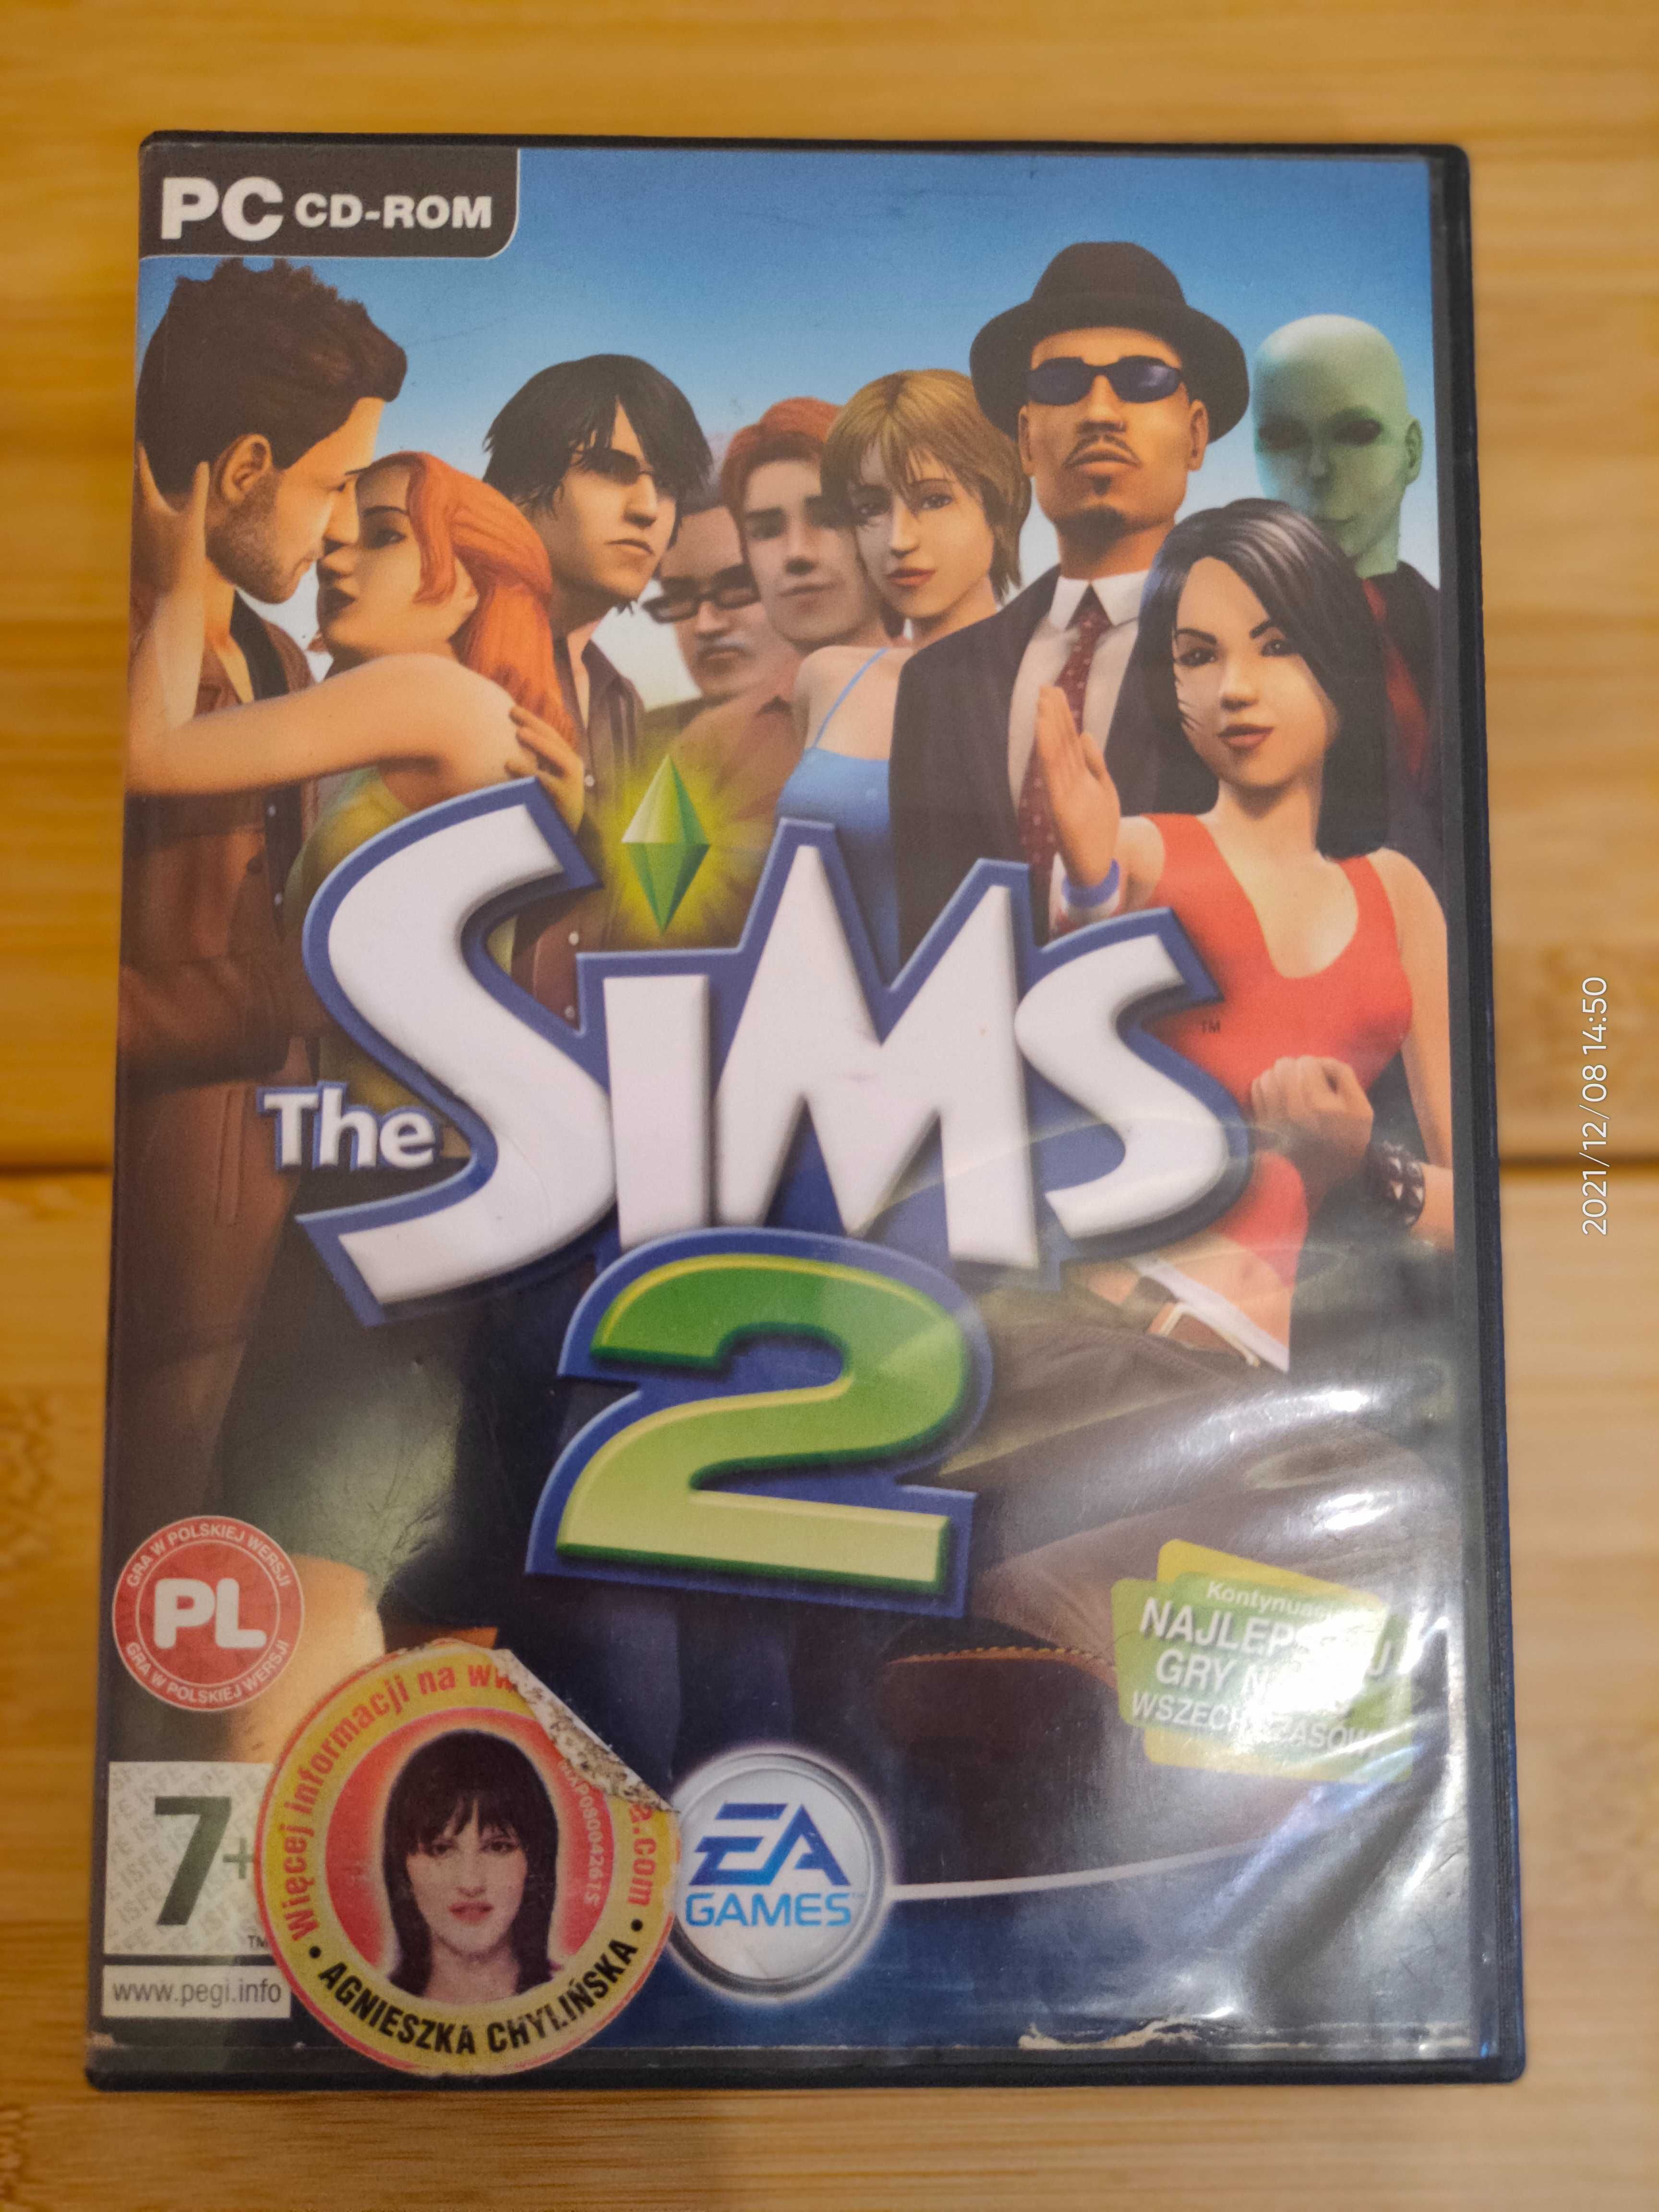 The Sims 2 - legendarna gra komputerowa na 4 płytach (oryginał!)